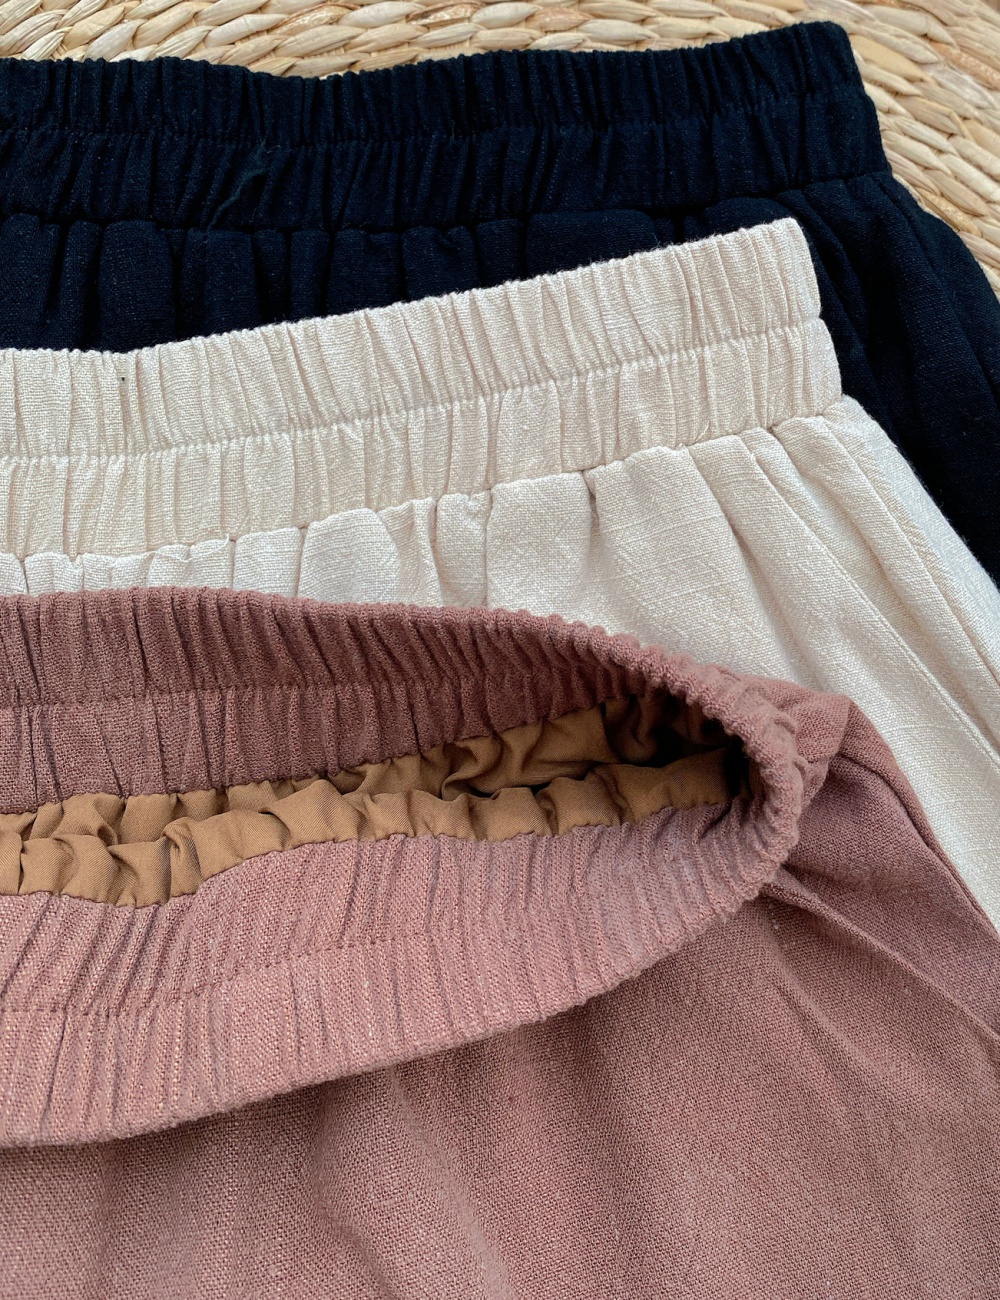 Pure cotton linen tops sleeveless short skirt a set